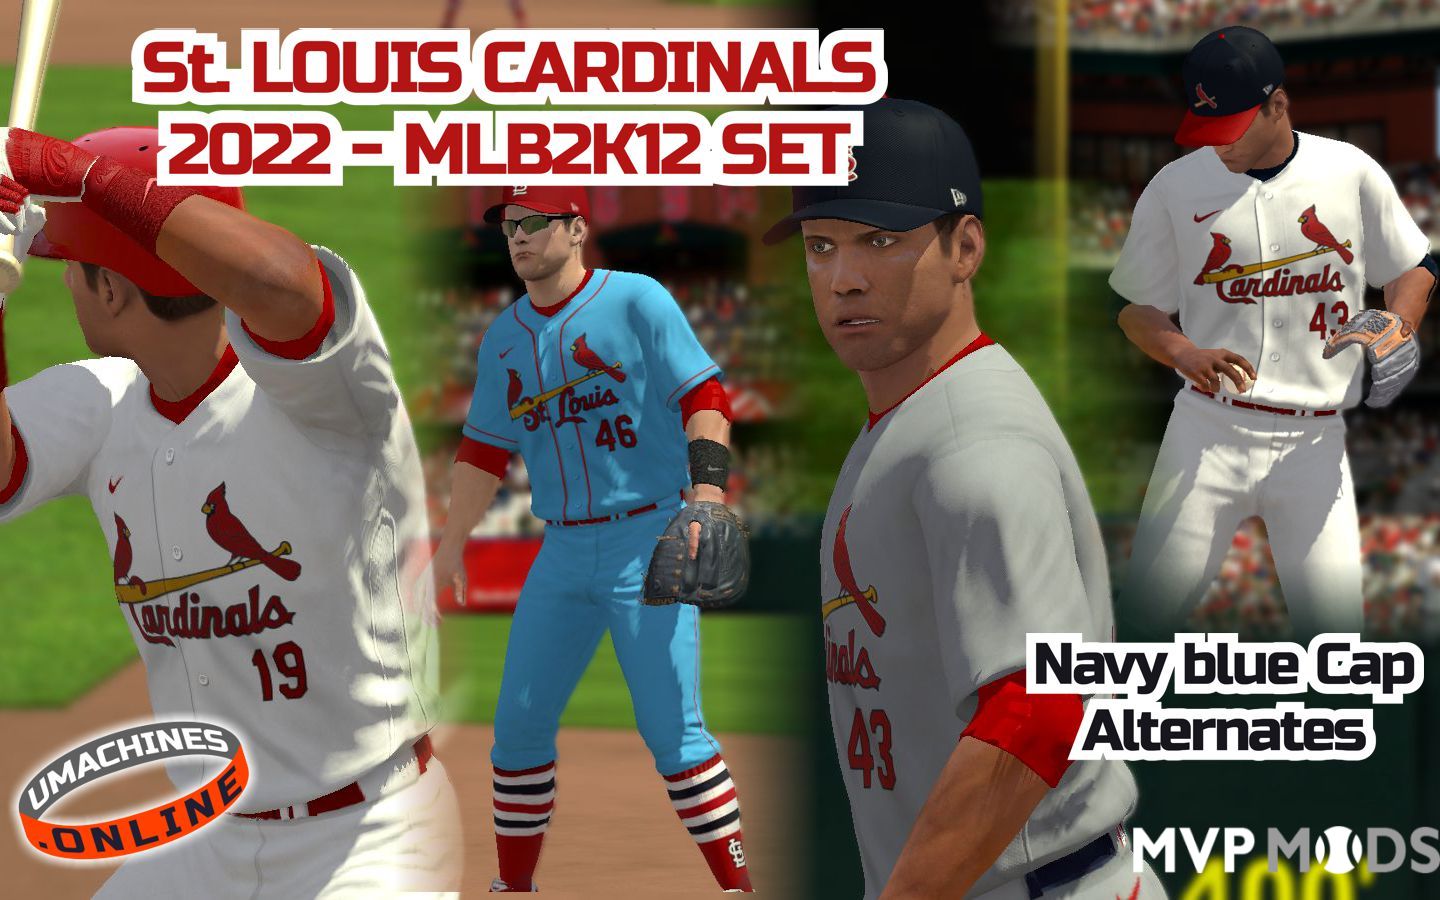 St. Louis Cardinals: Uniforms, PMell2293